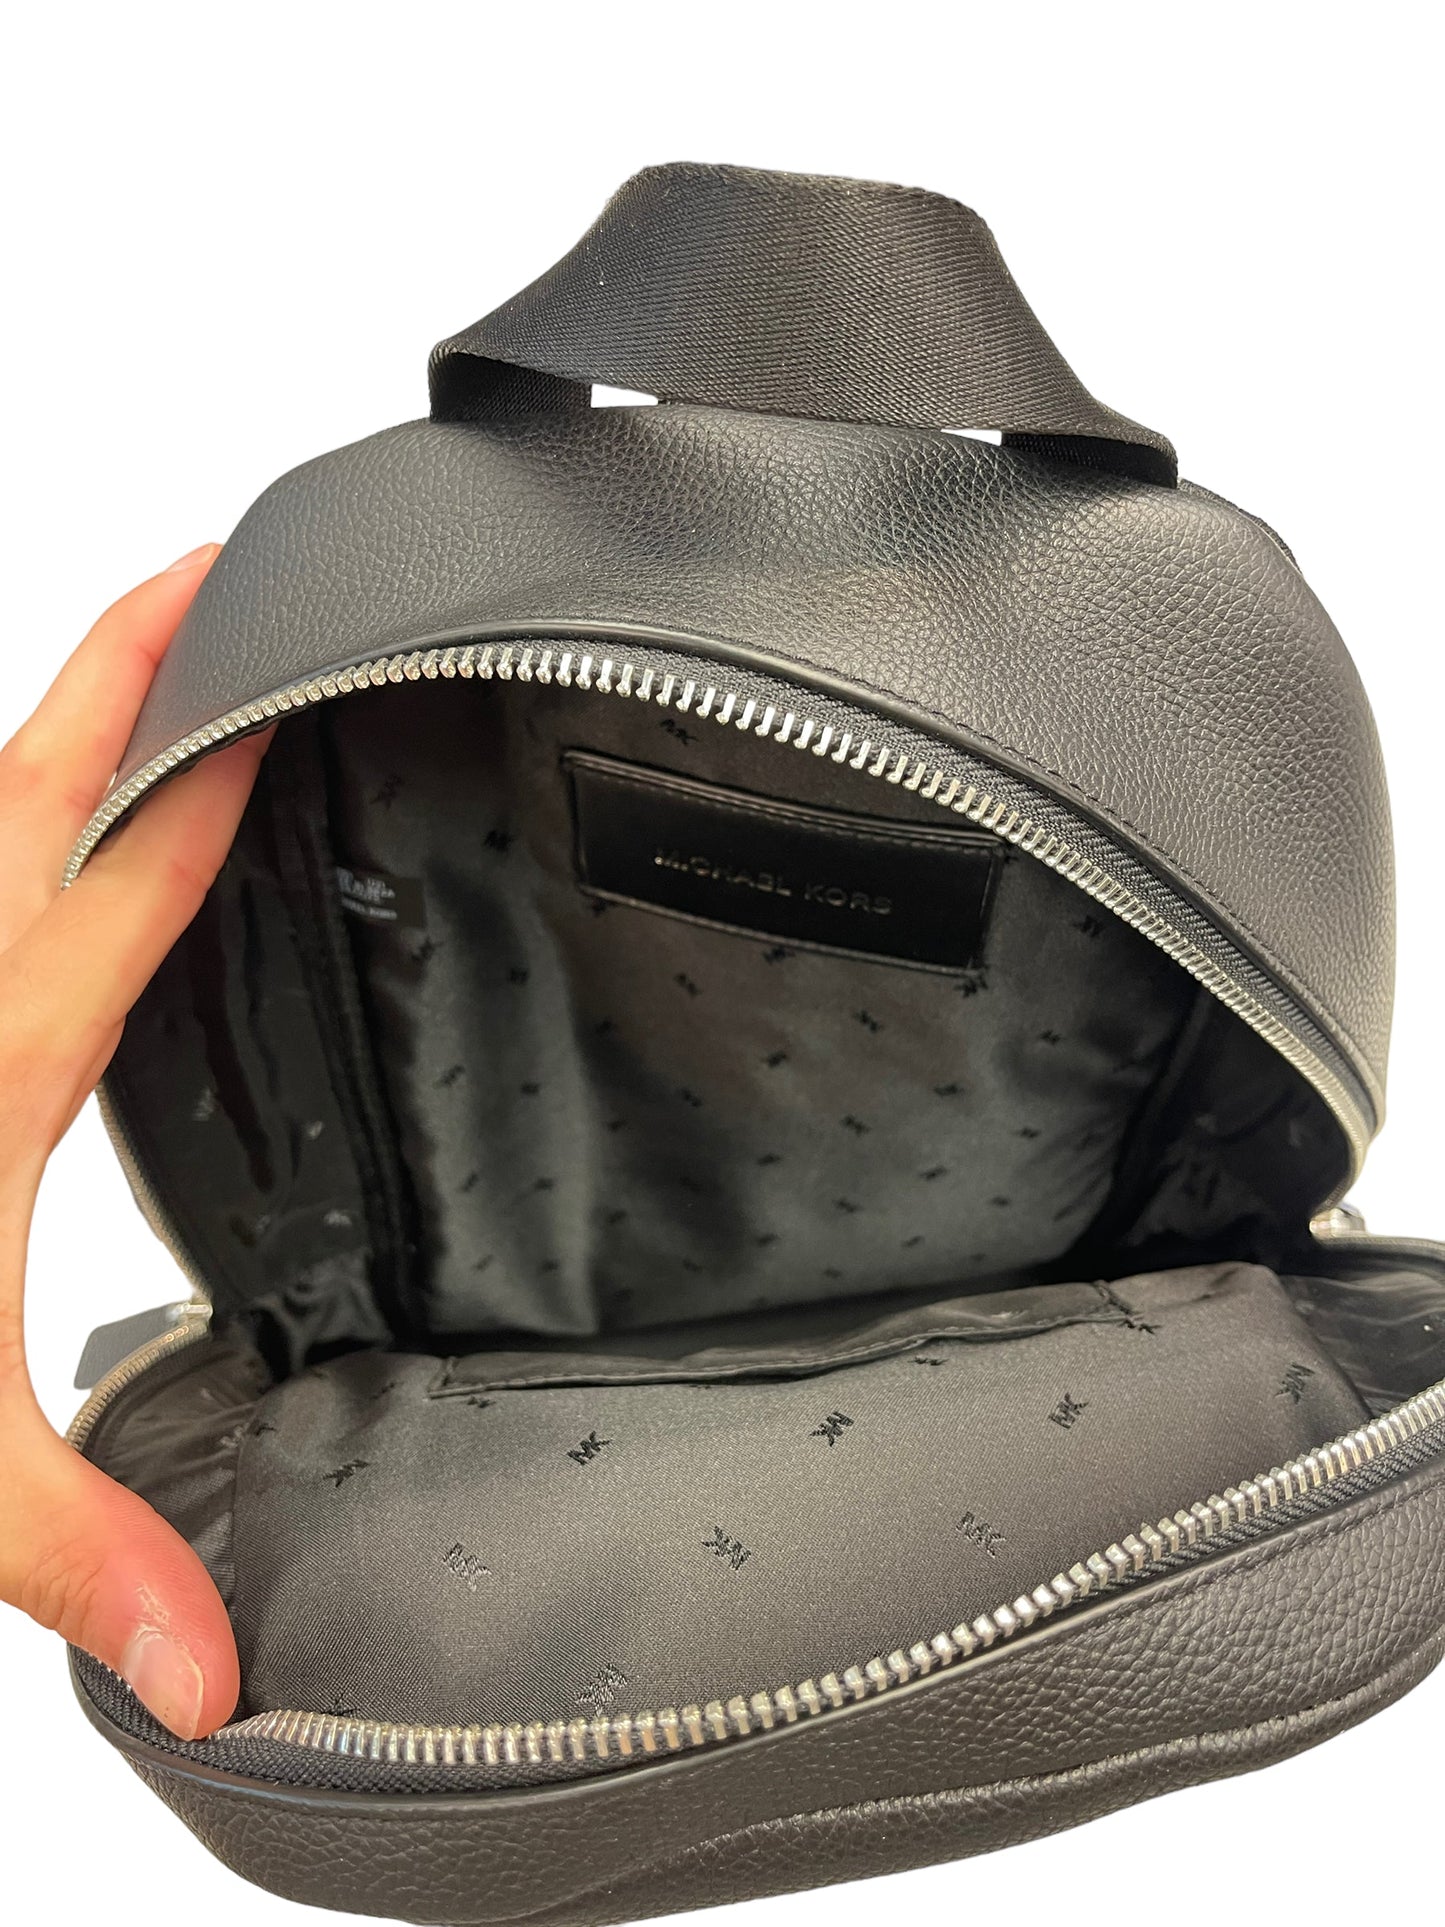 Backpack Designer By Michael Kors  Size: Large